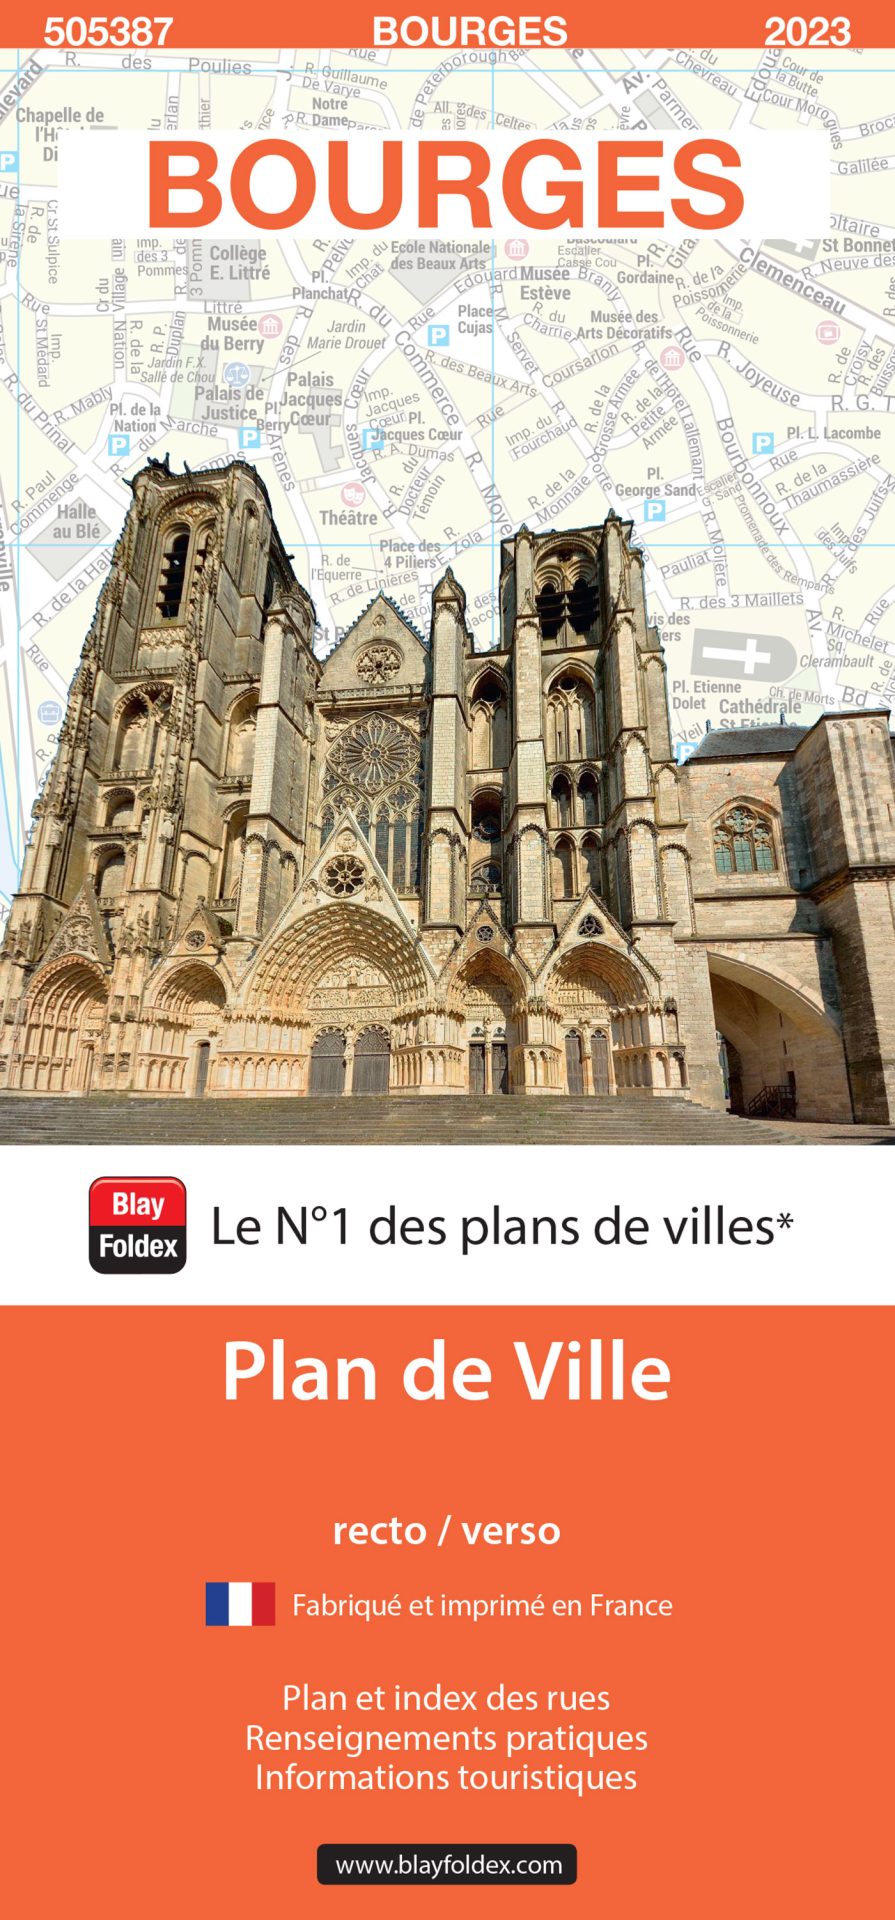 Plan de ville de Bourges - Blay-Foldex